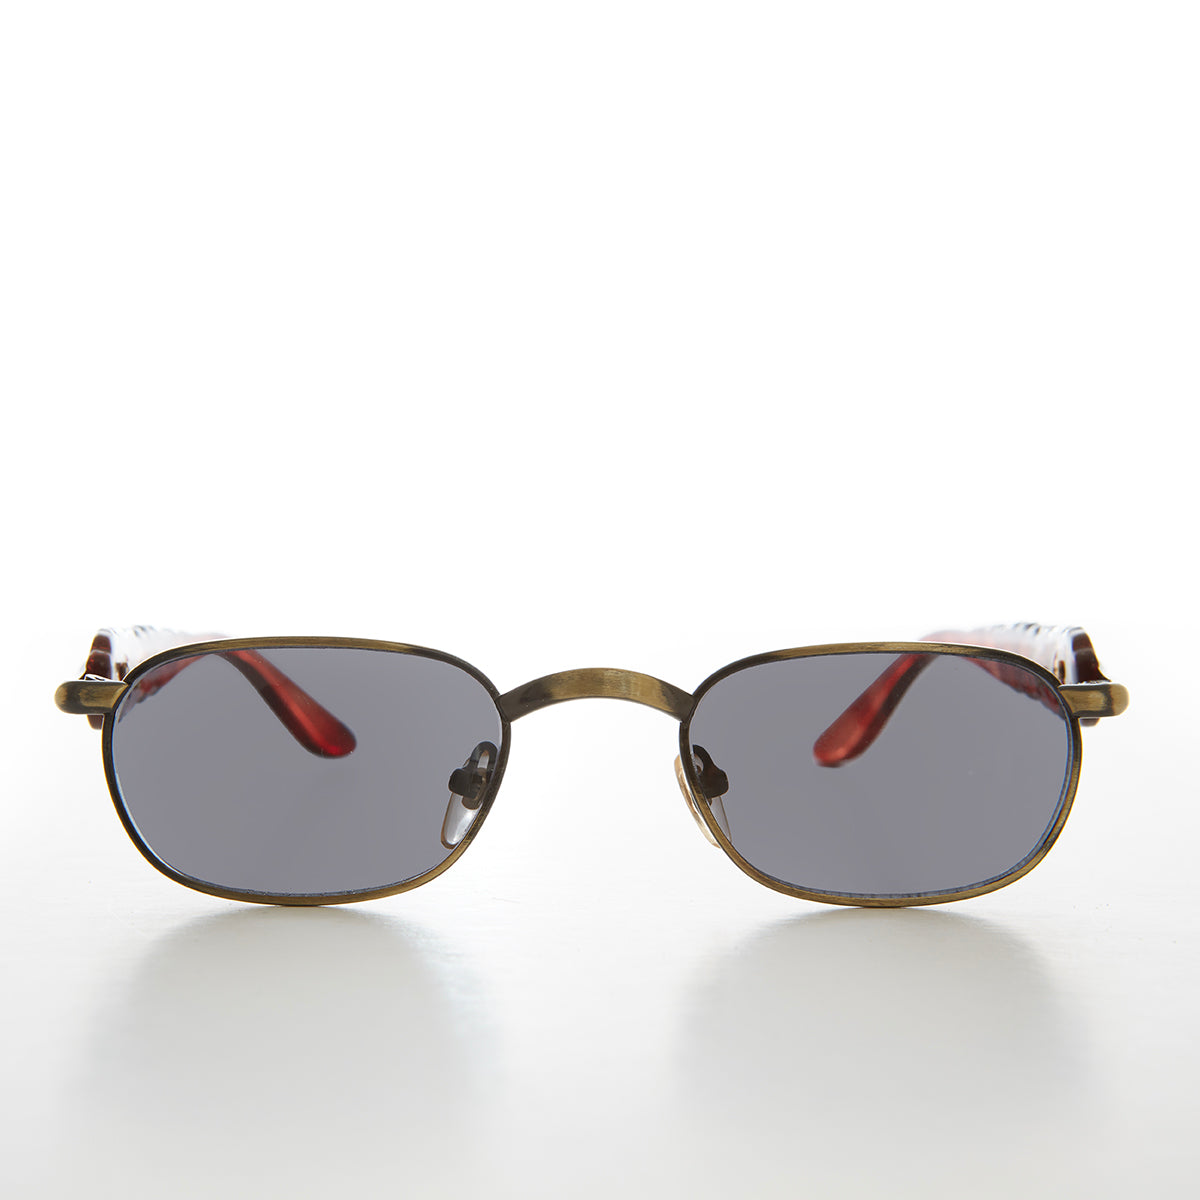 90s Unique Rectangular Vintage Sunglasses - Rusty